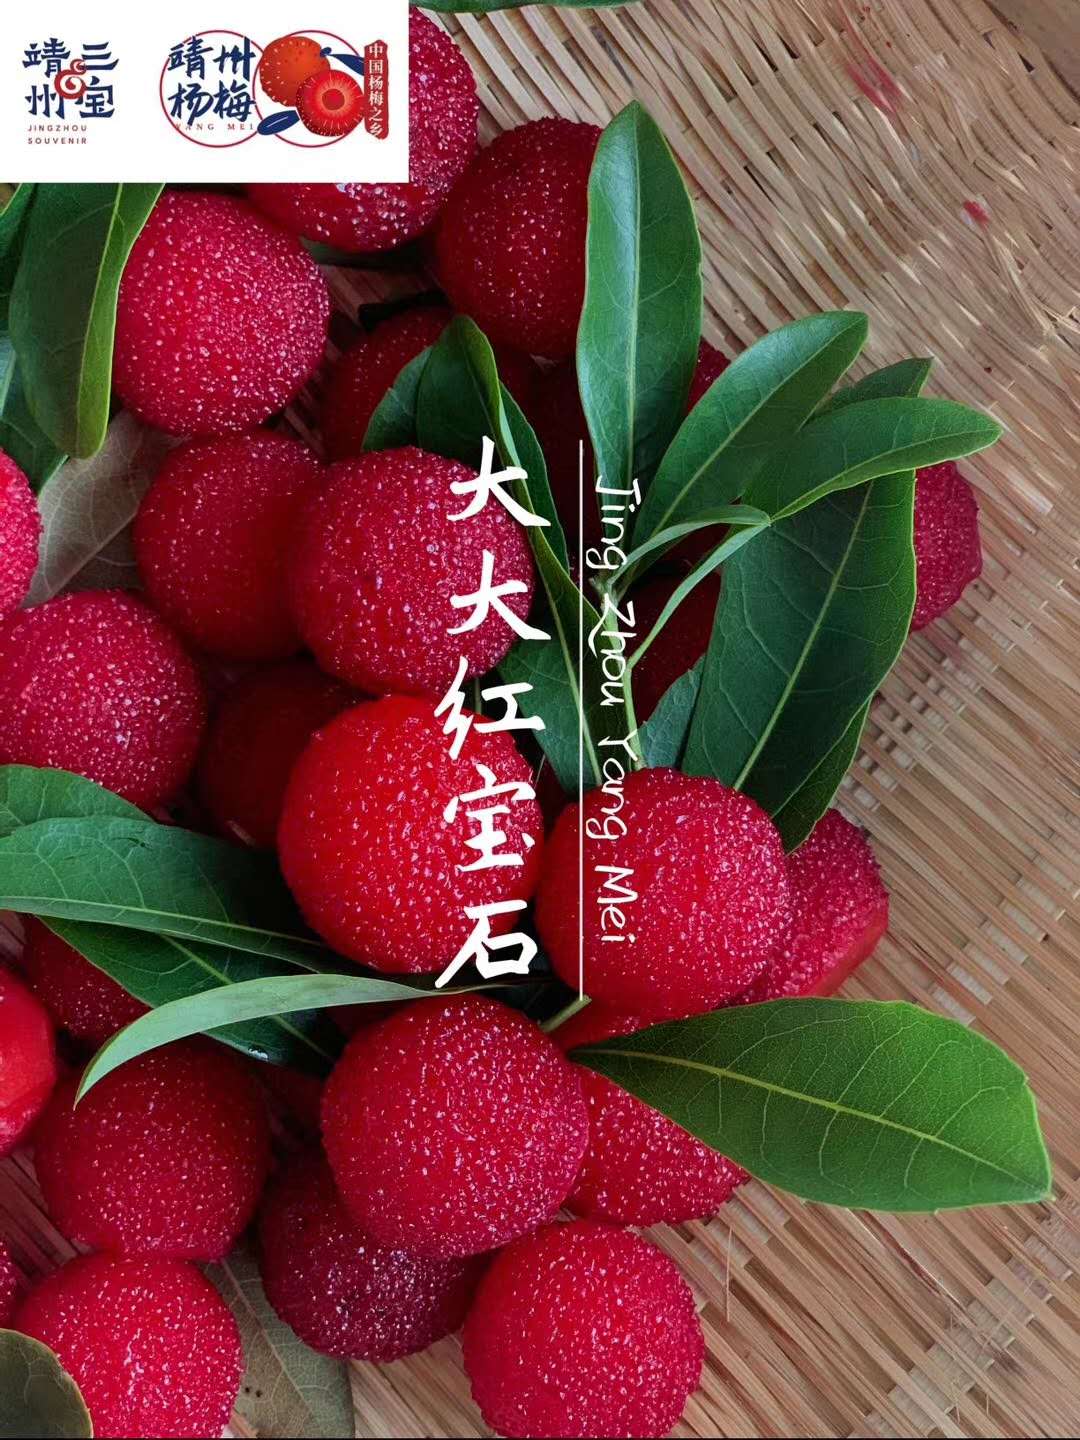 湖南汉众农业发展有限公司,怀化天然七角艾草植物种植,怀化艾制品制造销售